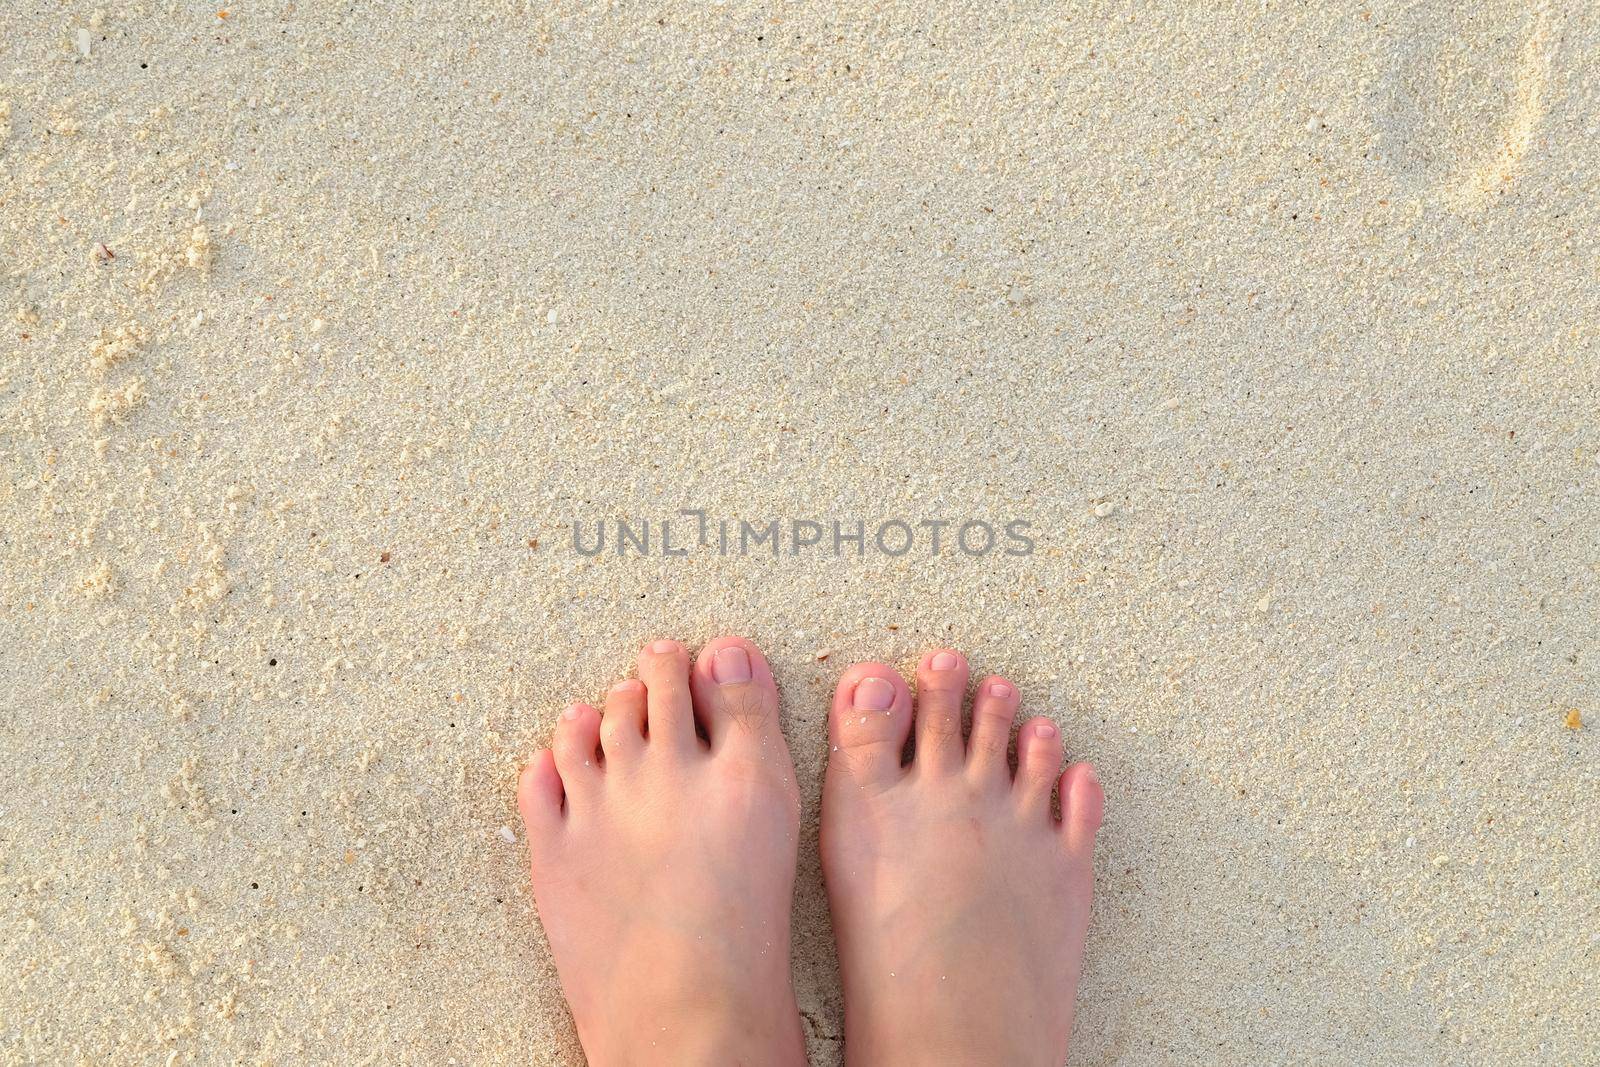 Girl's feet in the sand on the beach